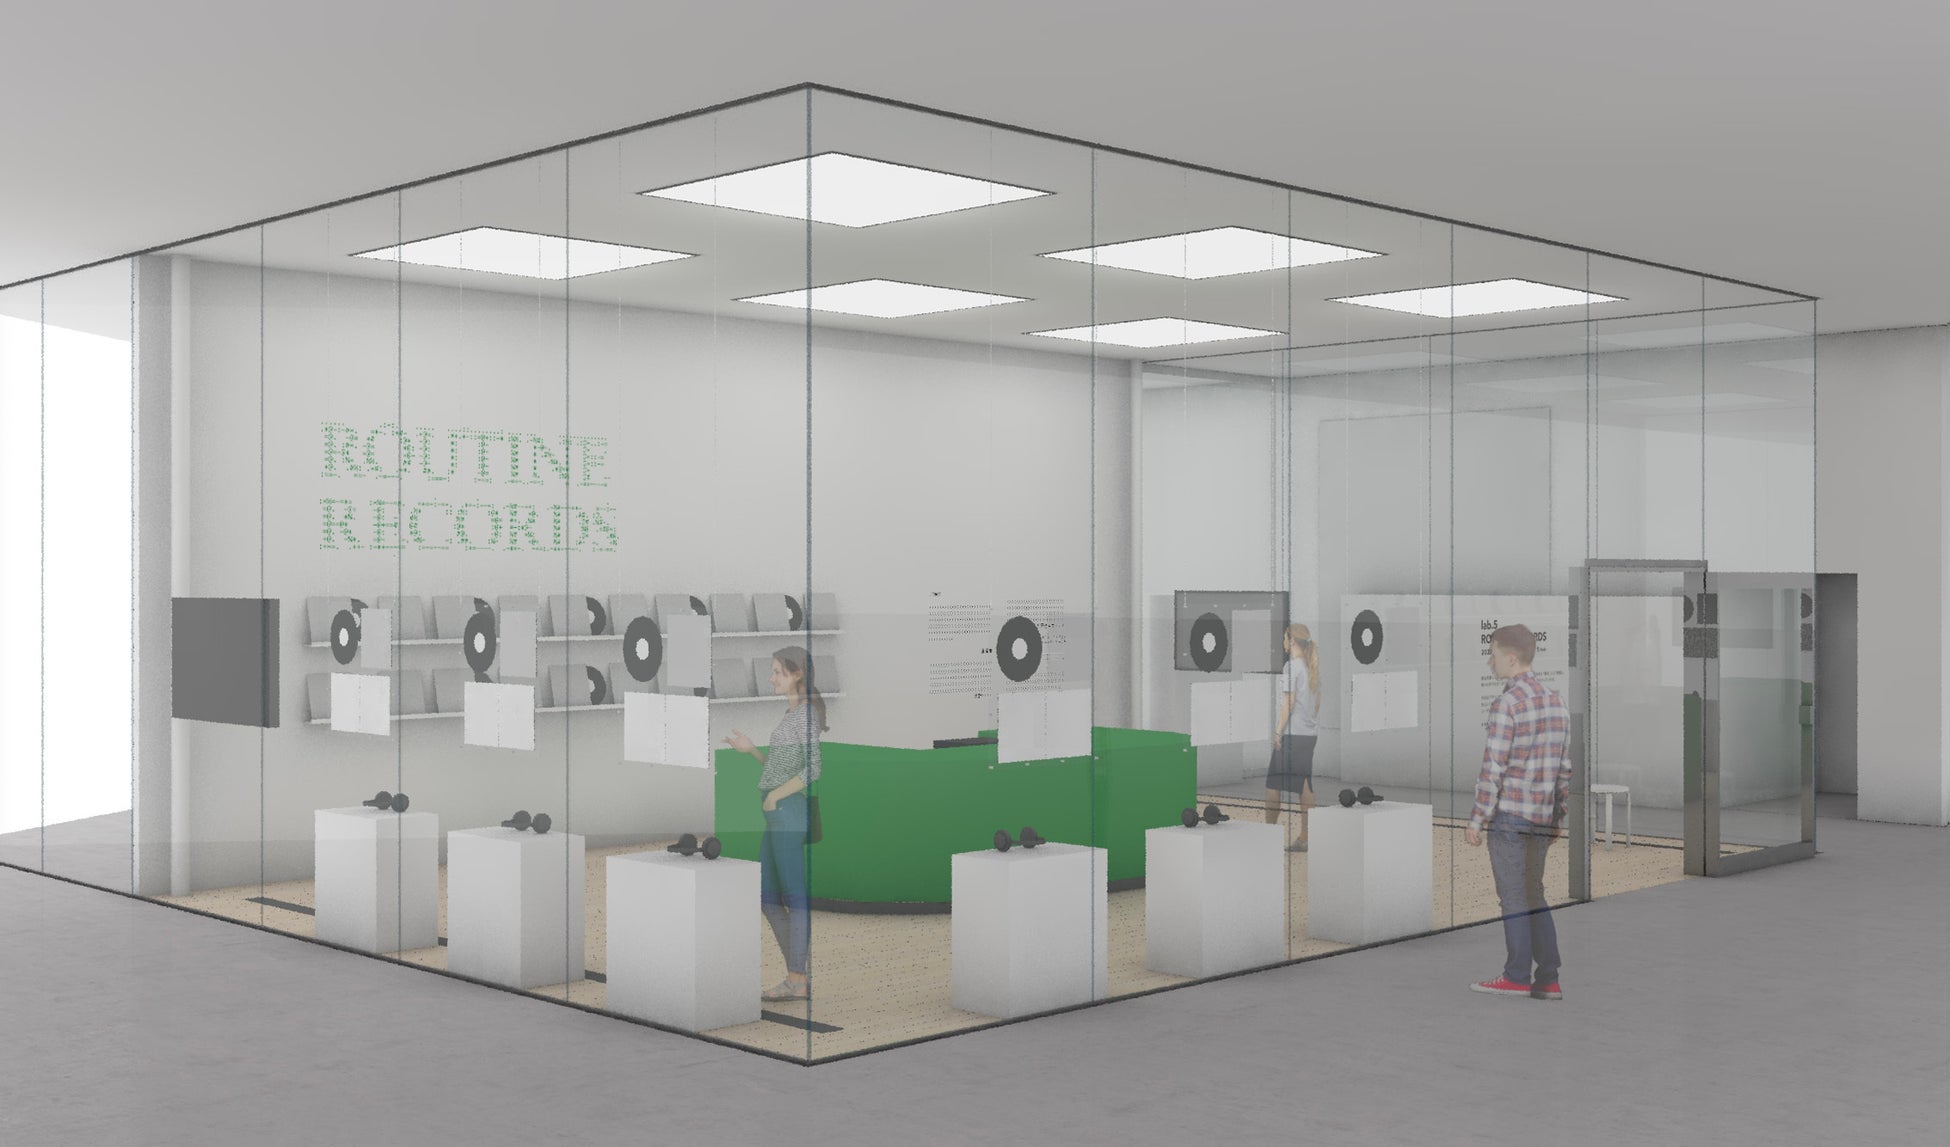 ヘラルボニー、金沢21世紀美術館で初となる展覧会「lab.5 ROUTINE RECORDS」展を10月1日より開催